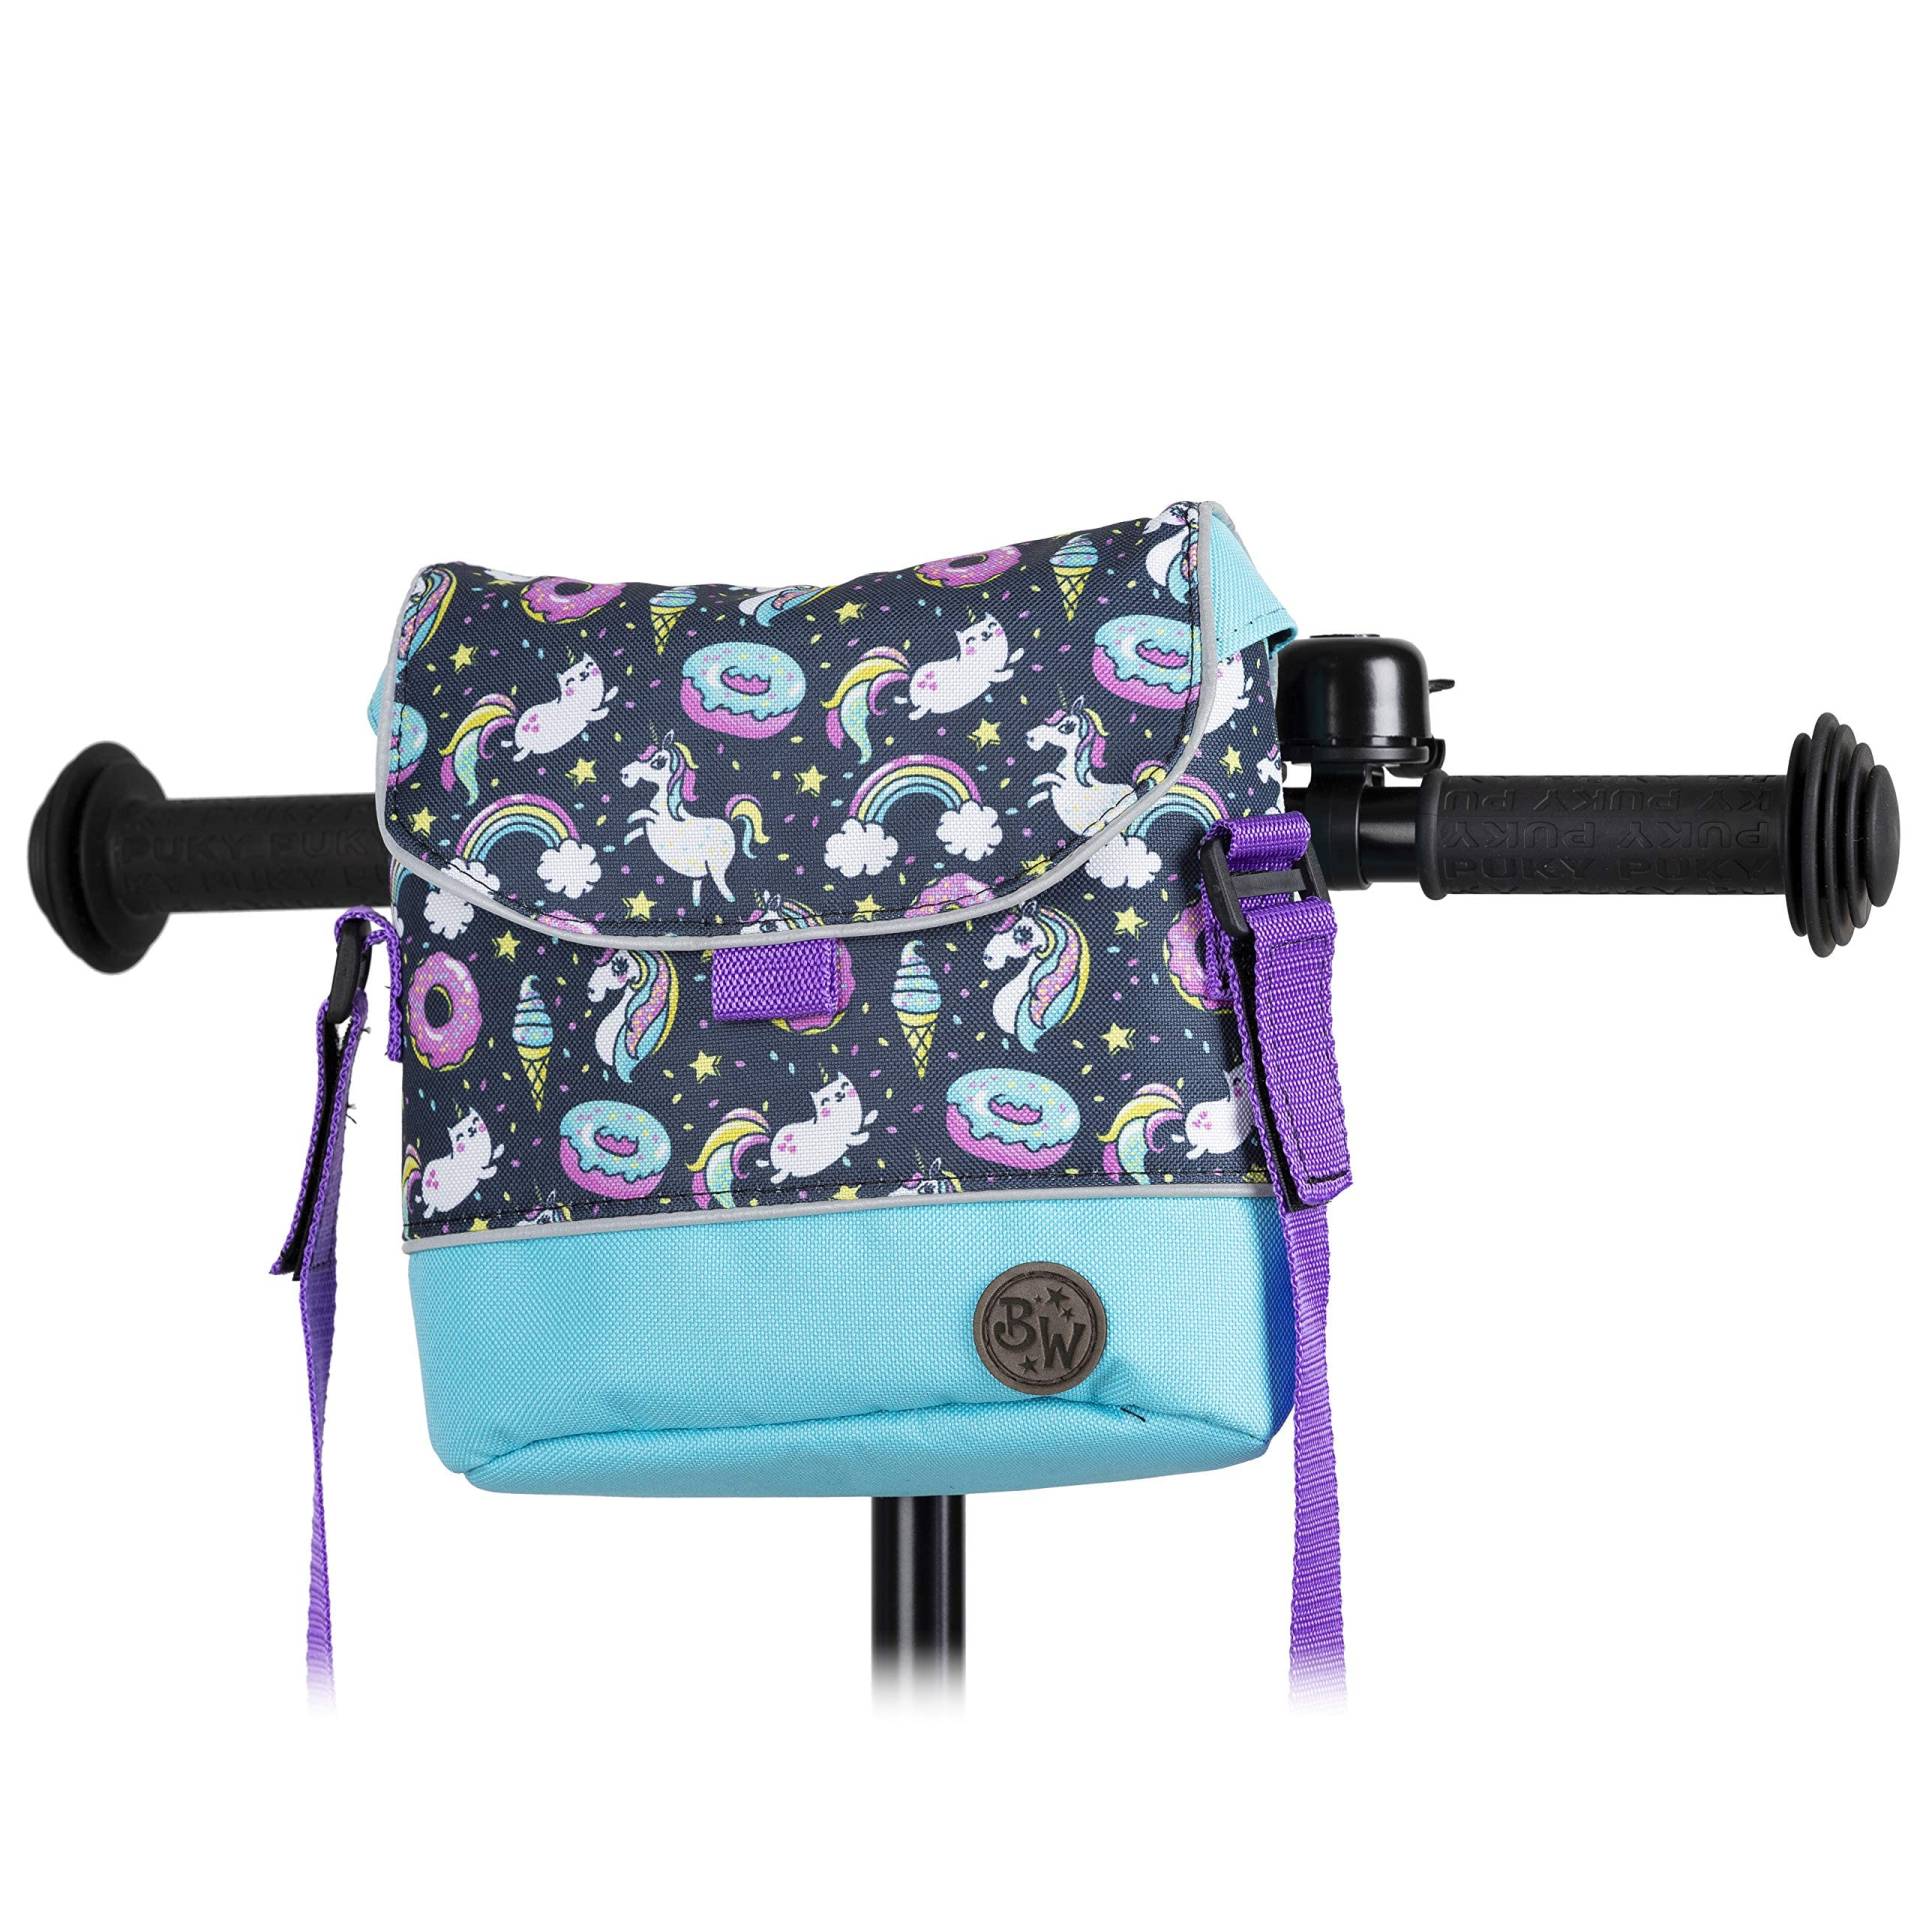 BAMBINIWELT Lenkertasche Tasche kompatibel mit Puky mit Woom Laufrad Räder Roller Fahrrad Fahrradtasche für Kinder wasserabweisend mit Schultergurt (Modell 24) von BambiniWelt by Rafael K.